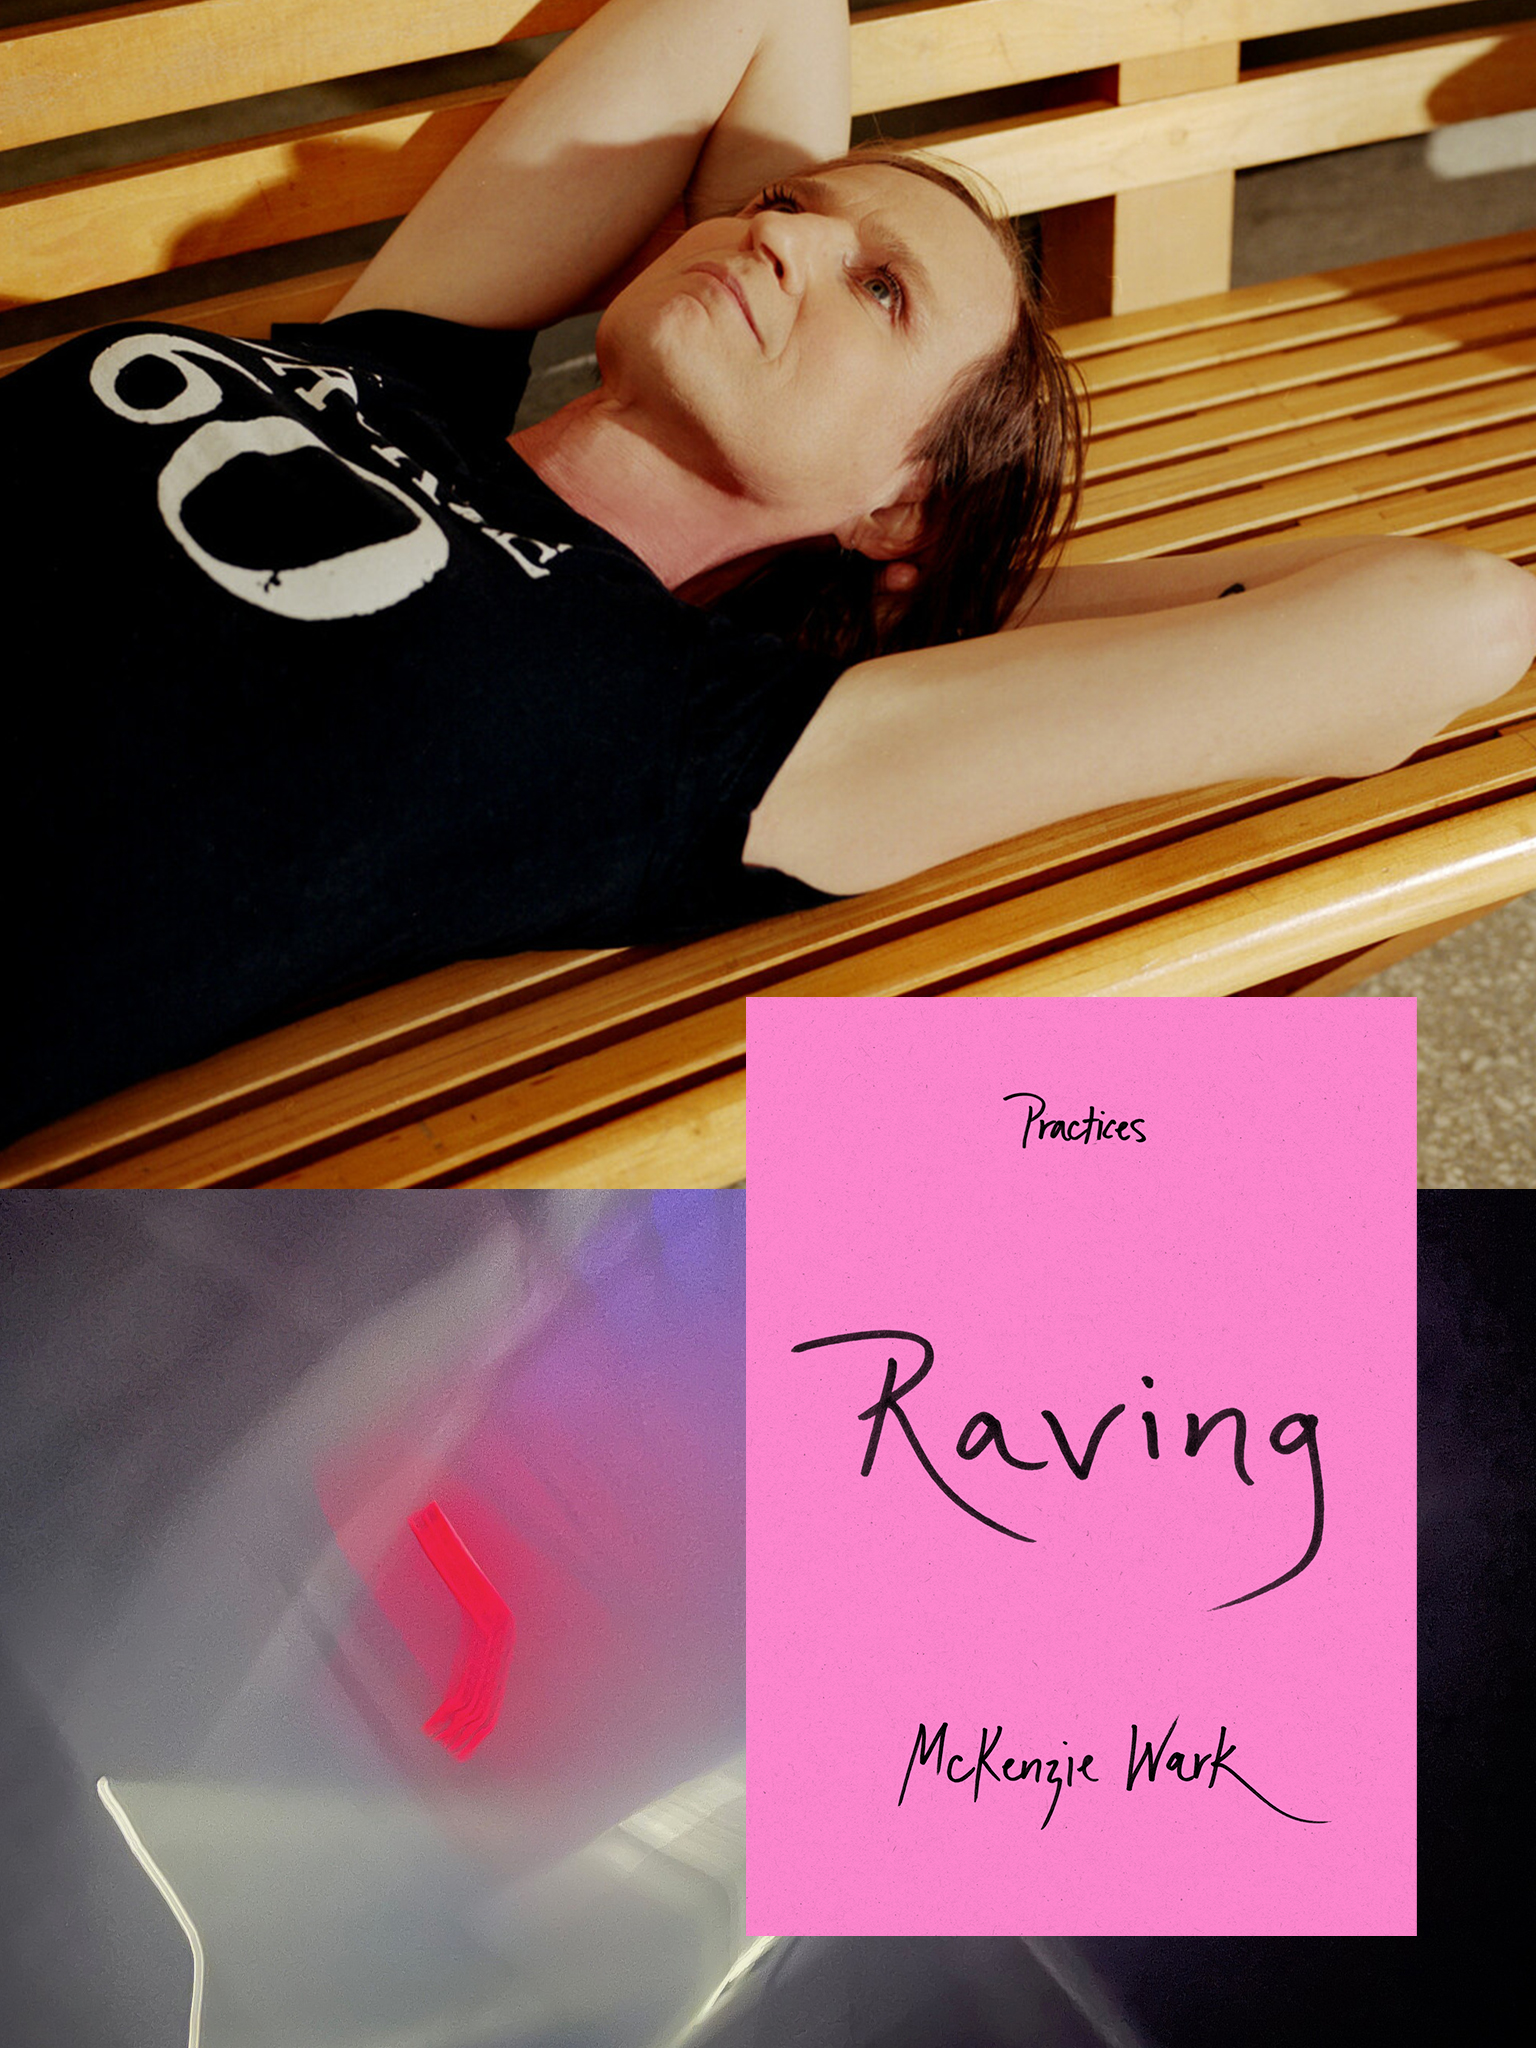 Rave vs. Music Festival - Guide to Raving